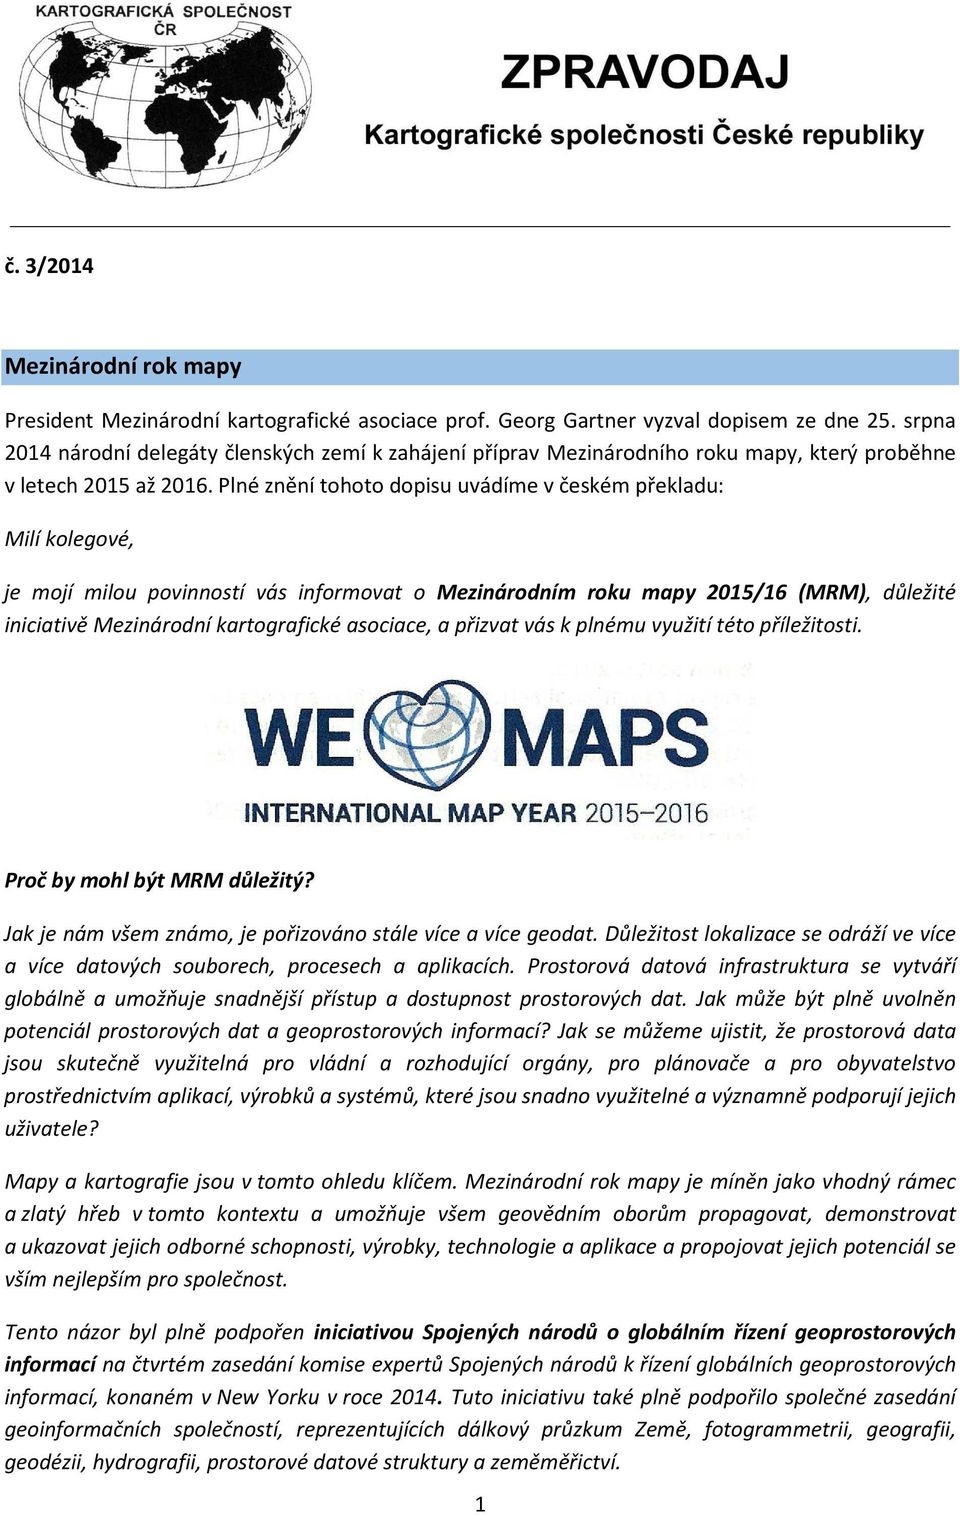 Plné znění tohoto dopisu uvádíme v českém překladu: Milí kolegové, je mojí milou povinností vás informovat o Mezinárodním roku mapy 2015/16 (MRM), důležité iniciativě Mezinárodní kartografické